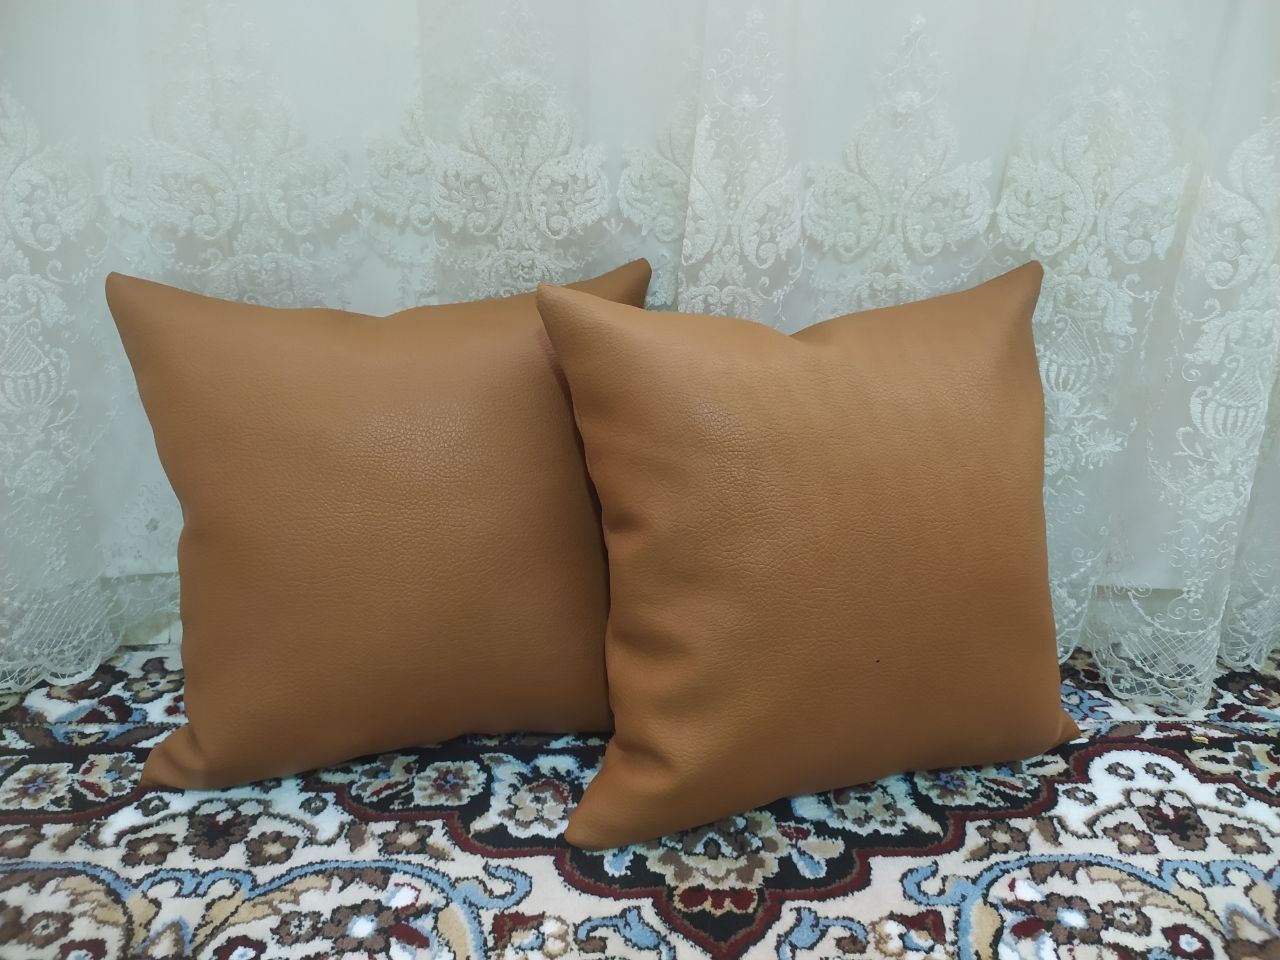 Декоративные подушки и сидушки в наличии и на заказ